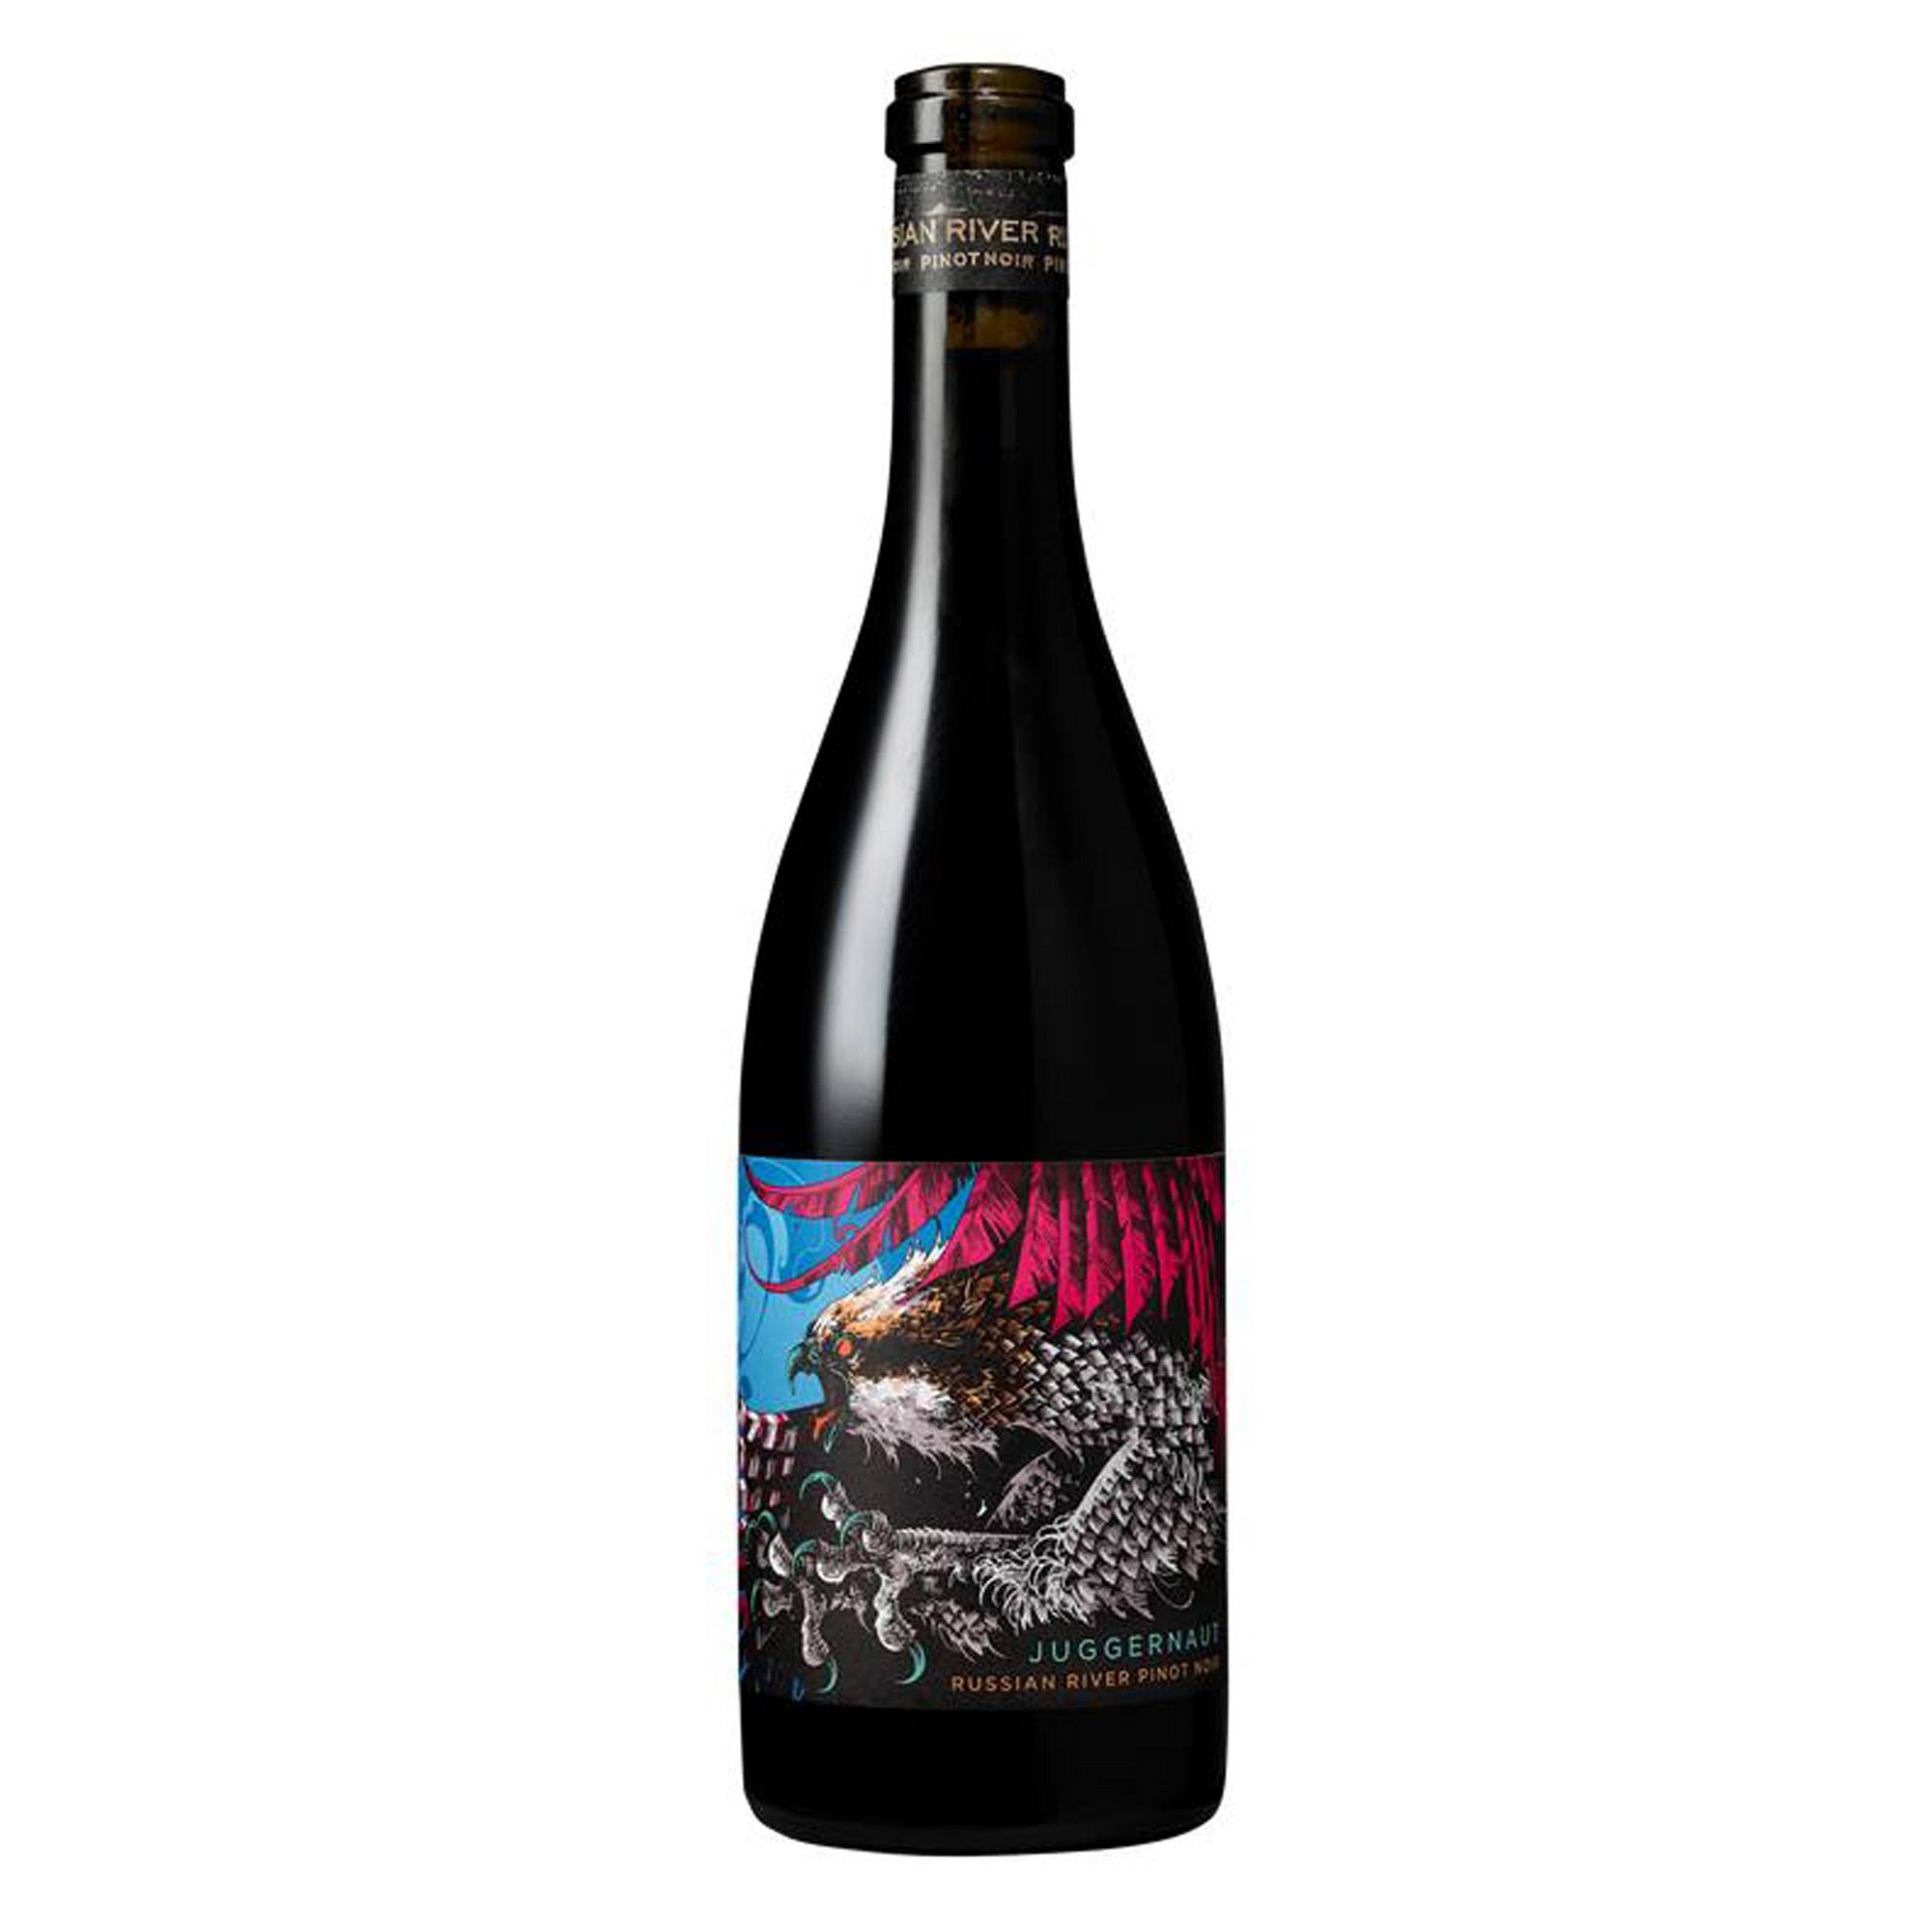 Juggernaut Pinot Noir, Russian River Valley - 750 ml